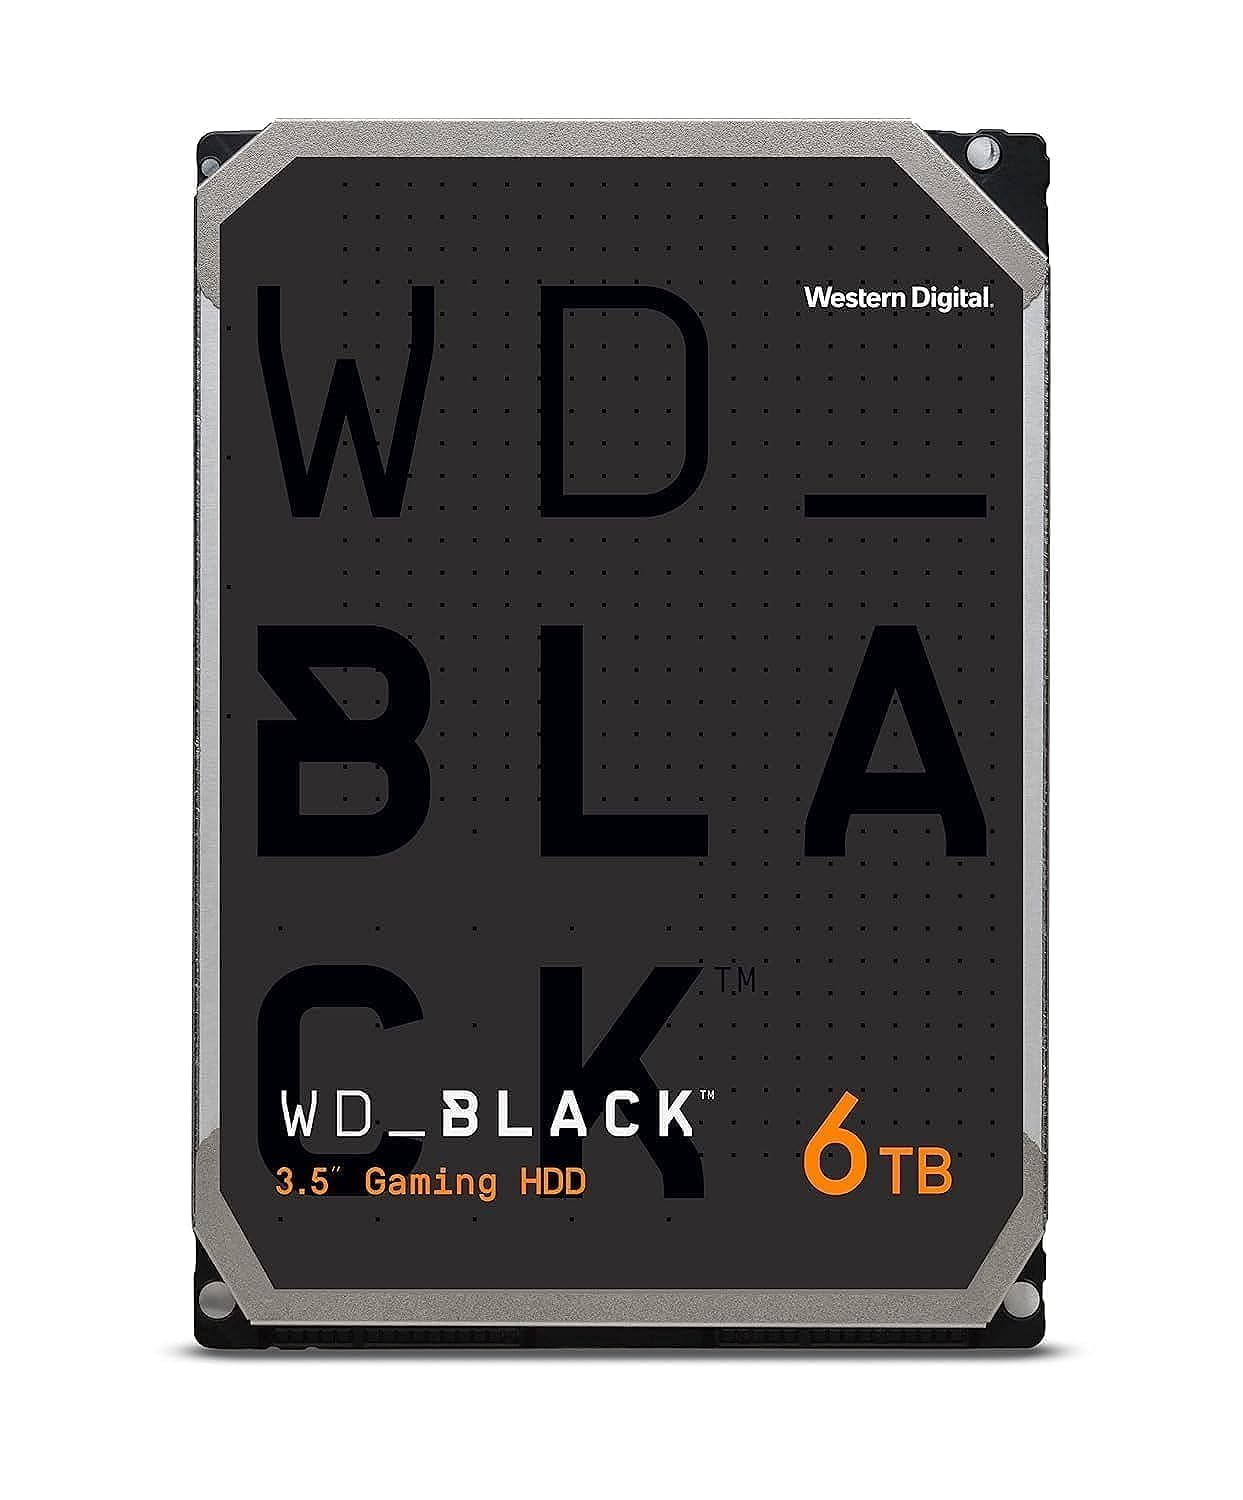 WD_BLACK HDD 6 TB (interne 3,5 Zoll-Gaming-Festplatte, Hochleistungsfestplatte, Performance Desktop HDD - 229 MB/s Lesen, 7.200 U/min, SATA 6 Gbit/s, 128 MB Cache, CMR) Schwarz